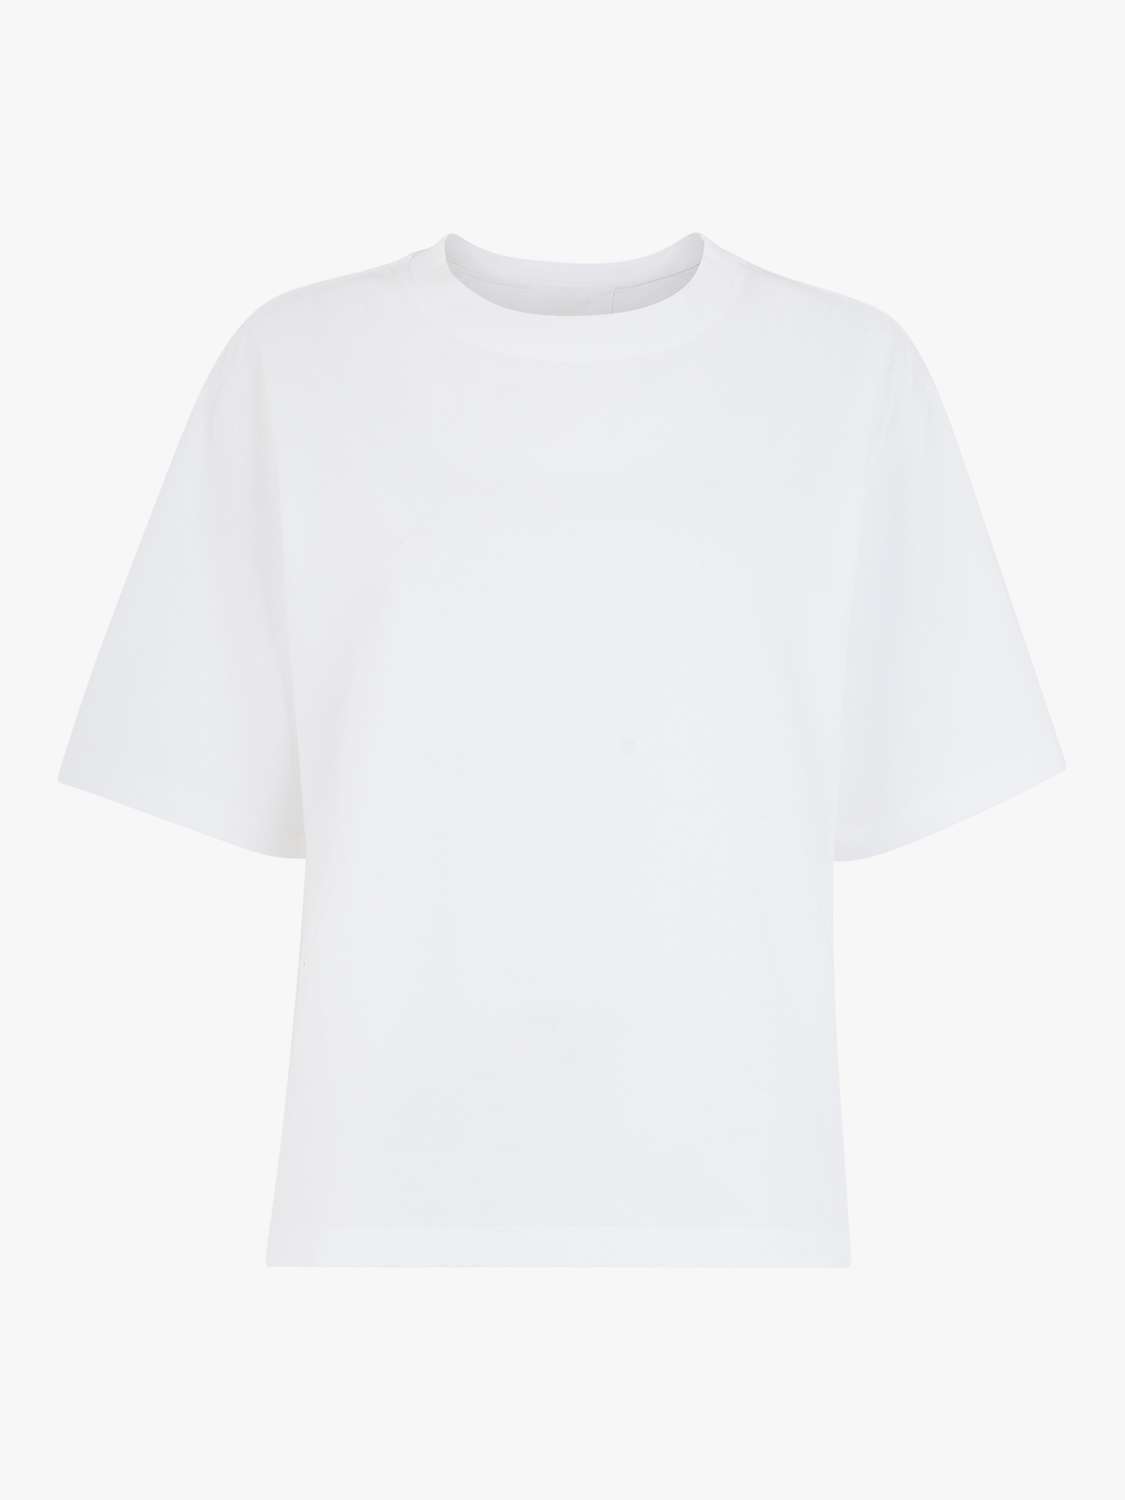 Buy Whistles Boyfriend Oversized T-Shirt, White Online at johnlewis.com